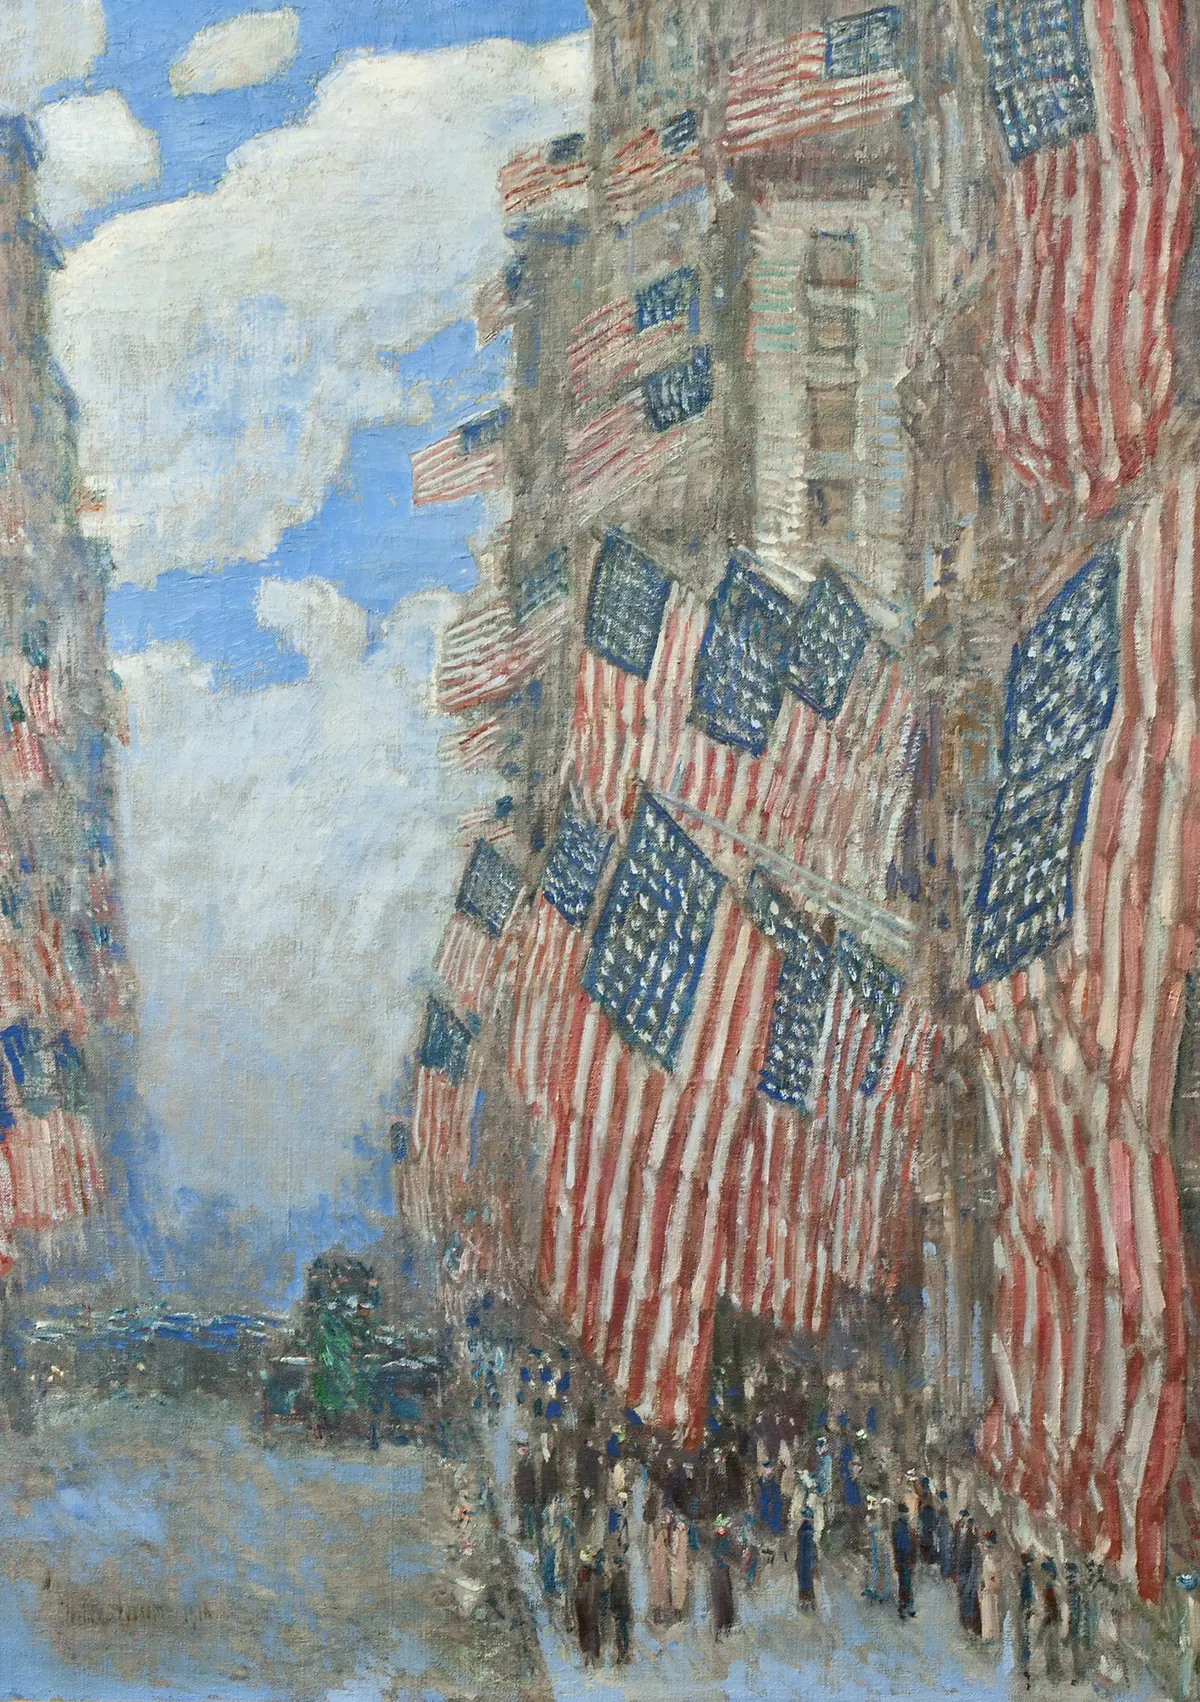 Quatro de Julho, 1916 by Frederick Childe Hassam - 1916 - 91.4 × 66.7 cm 